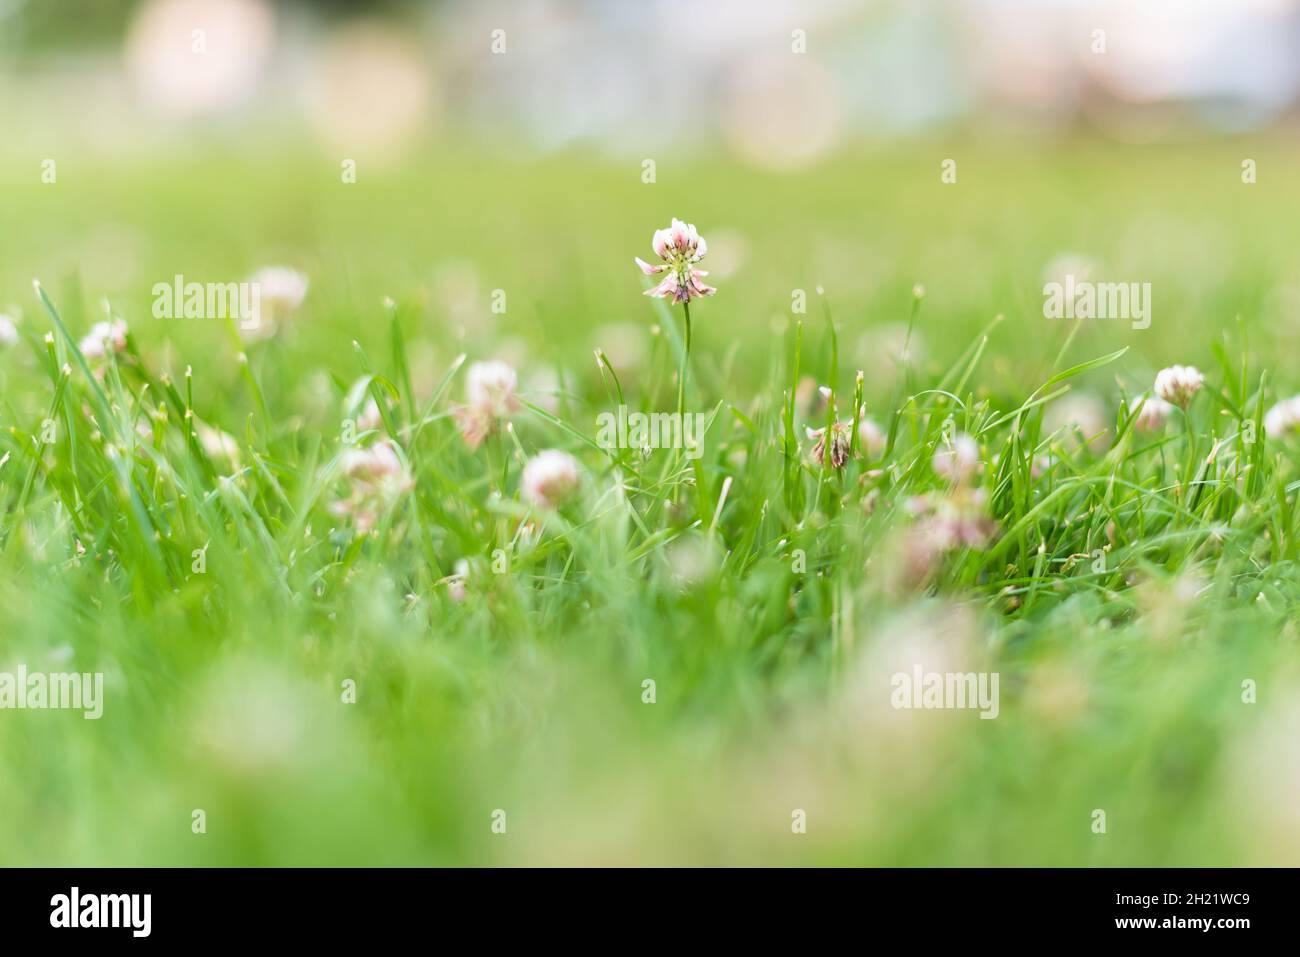 Primer plano de flores de trébol en césped verde en verano Foto de stock